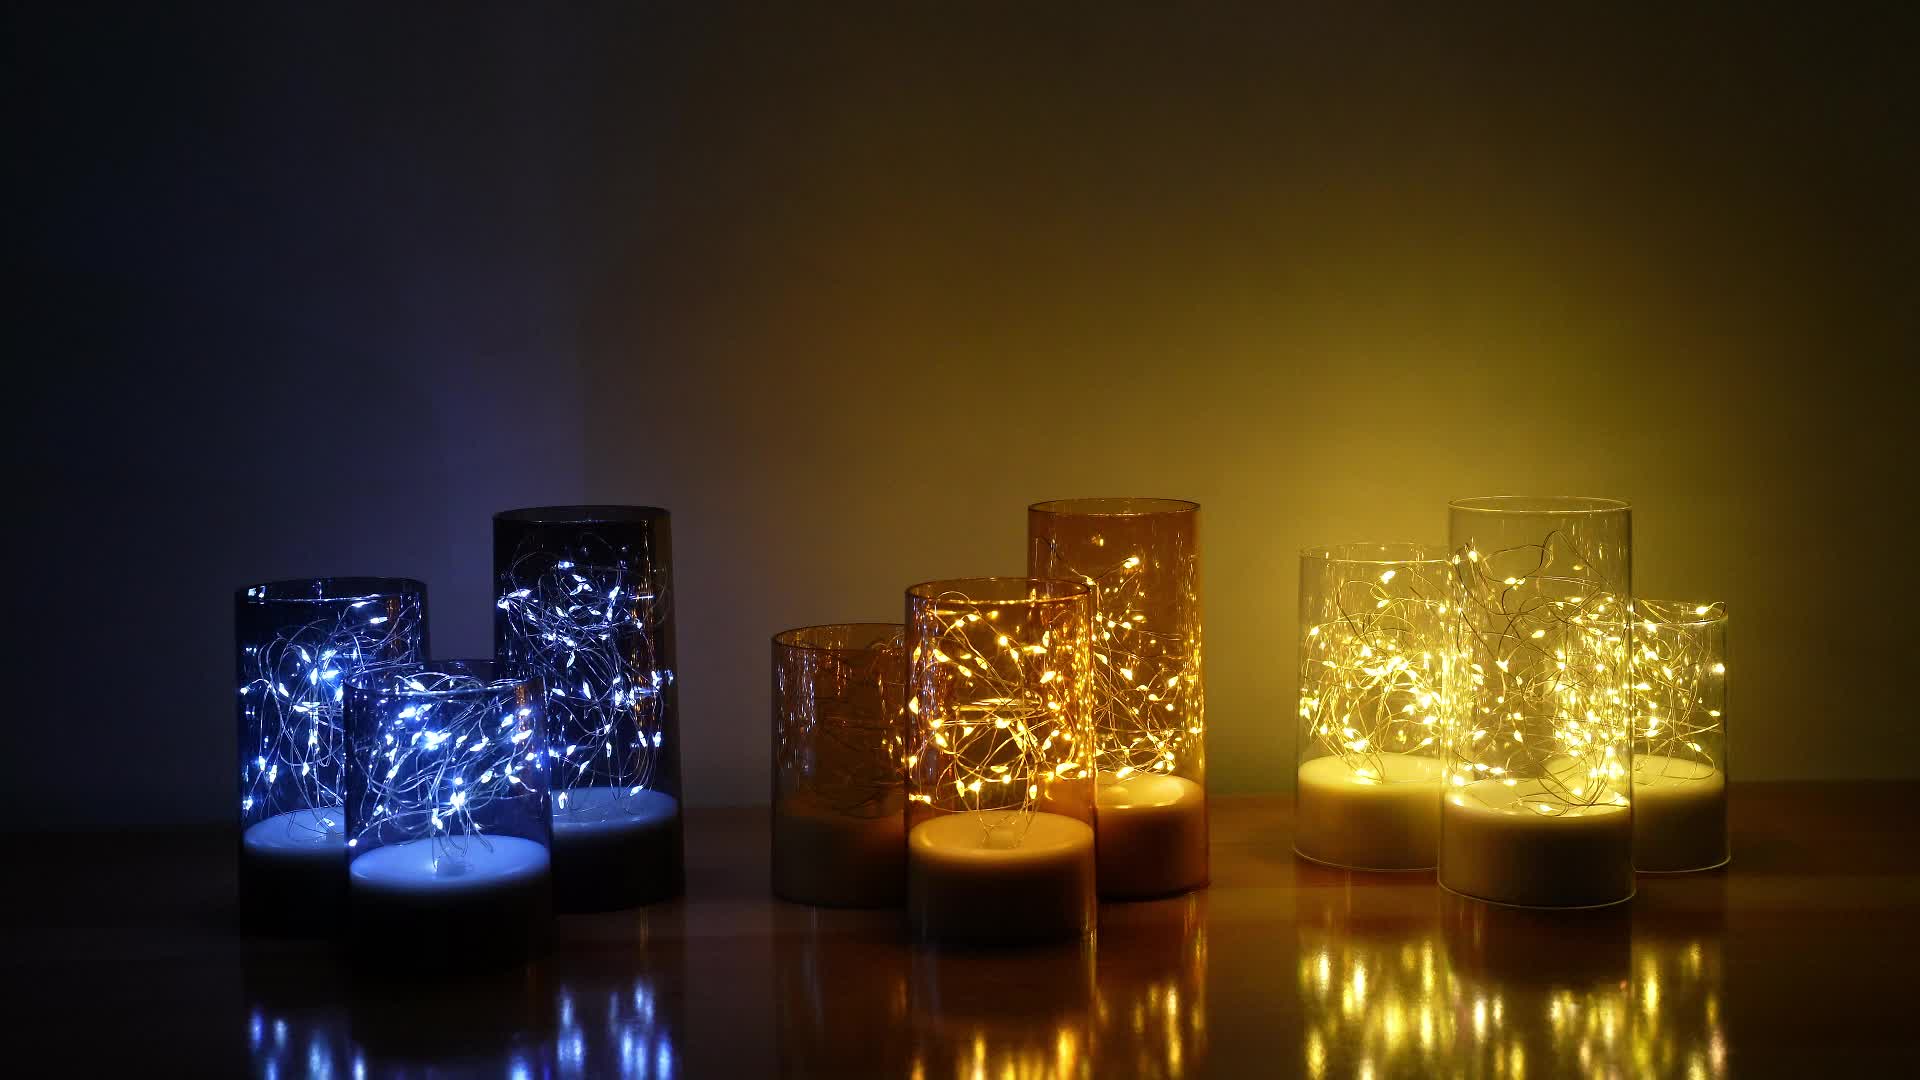 Eywamage Bougies sans flamme en verre doré vacillant, bougies LED  électriques réalistes à piles avec télécommande D 7,6 cm H 10,2 cm 12,7 cm  15,2 cm